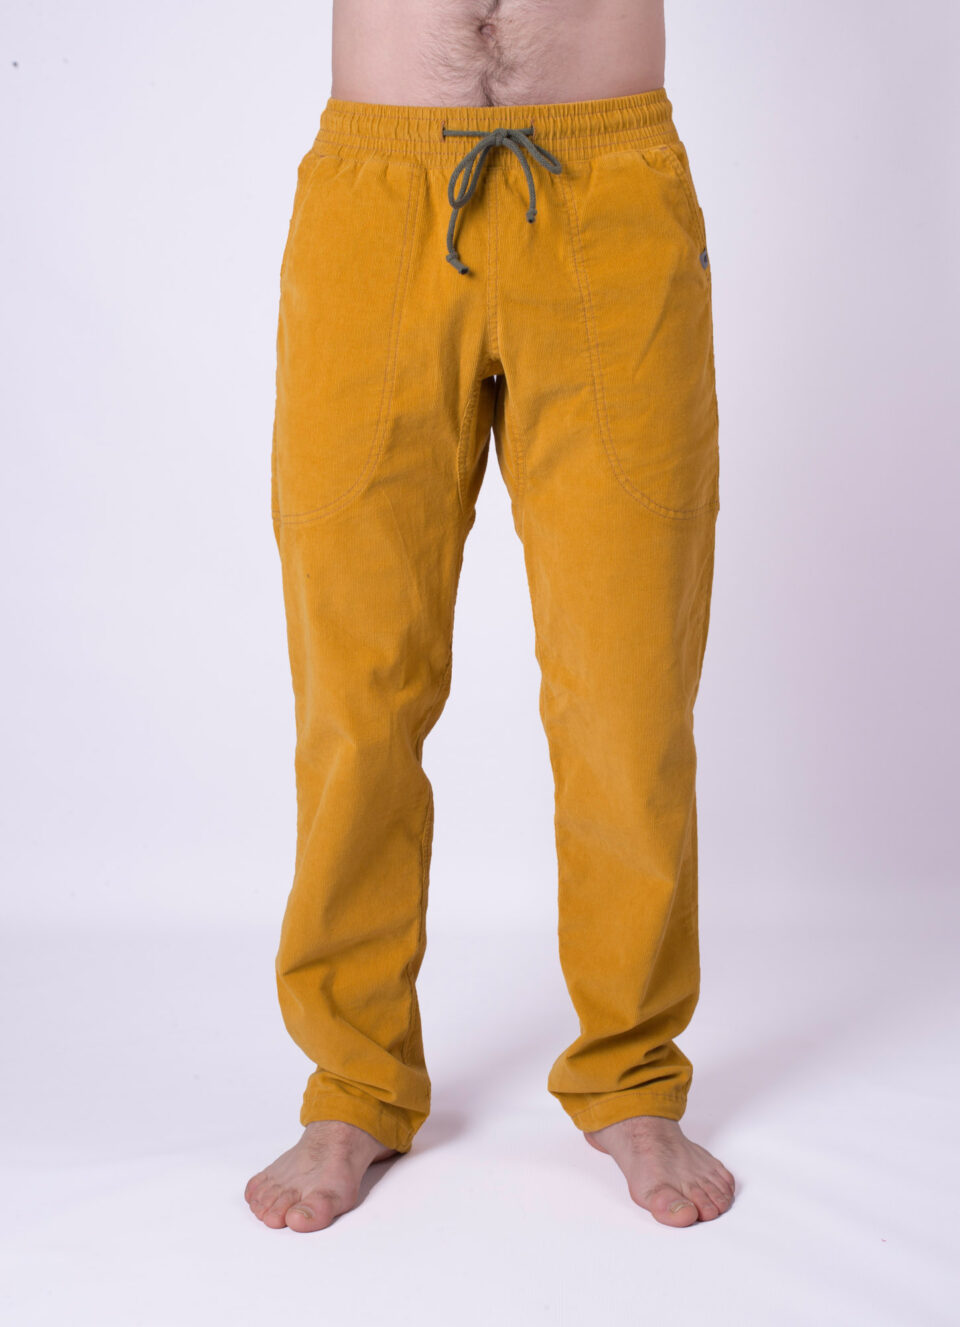 Rocket Pocket corduroy man pants- mustard yellow